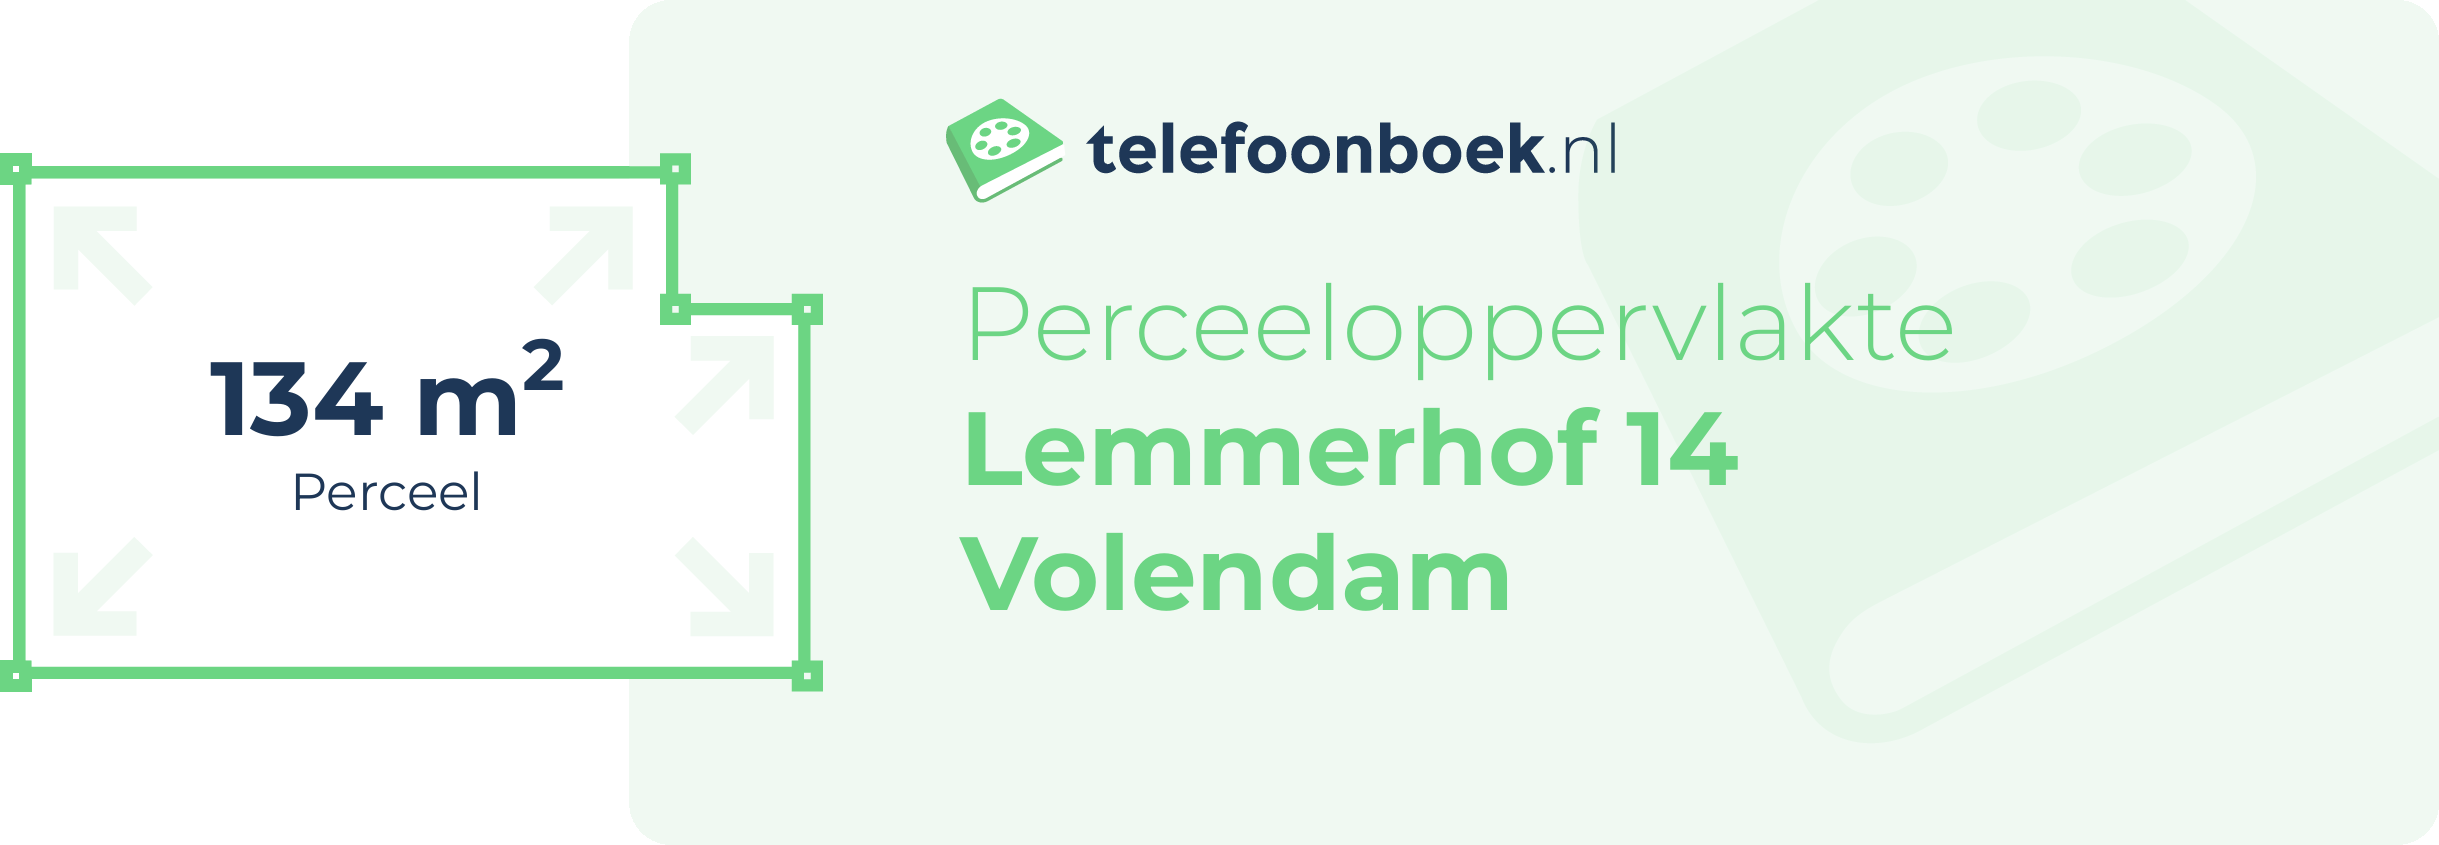 Perceeloppervlakte Lemmerhof 14 Volendam